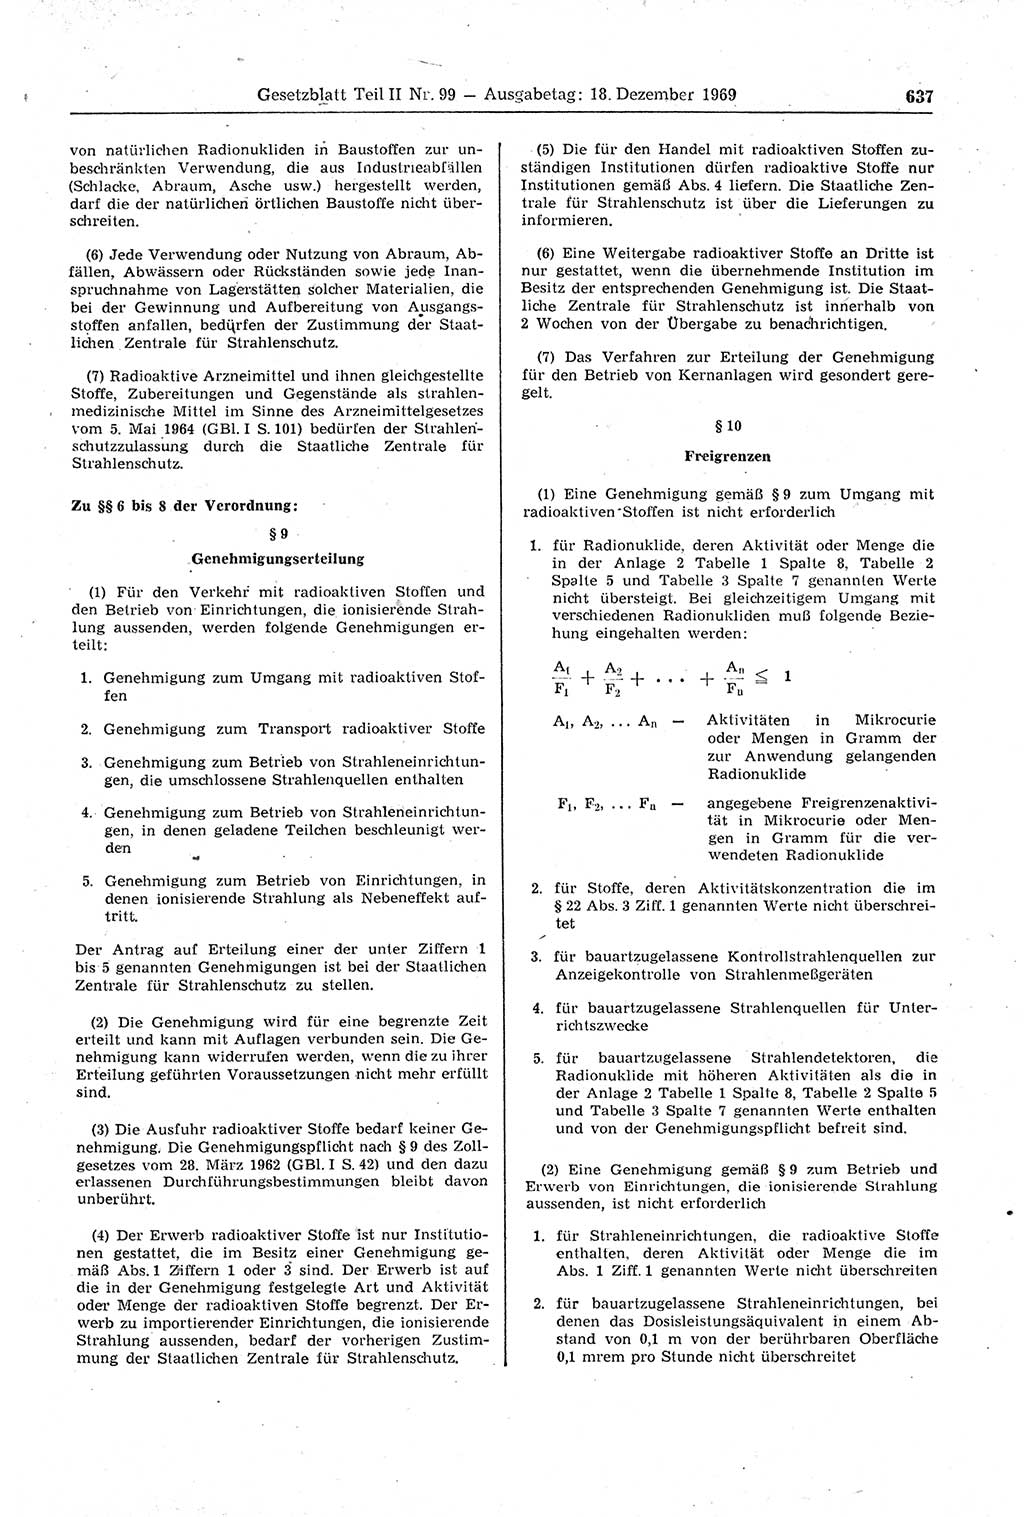 Gesetzblatt (GBl.) der Deutschen Demokratischen Republik (DDR) Teil ⅠⅠ 1969, Seite 637 (GBl. DDR ⅠⅠ 1969, S. 637)